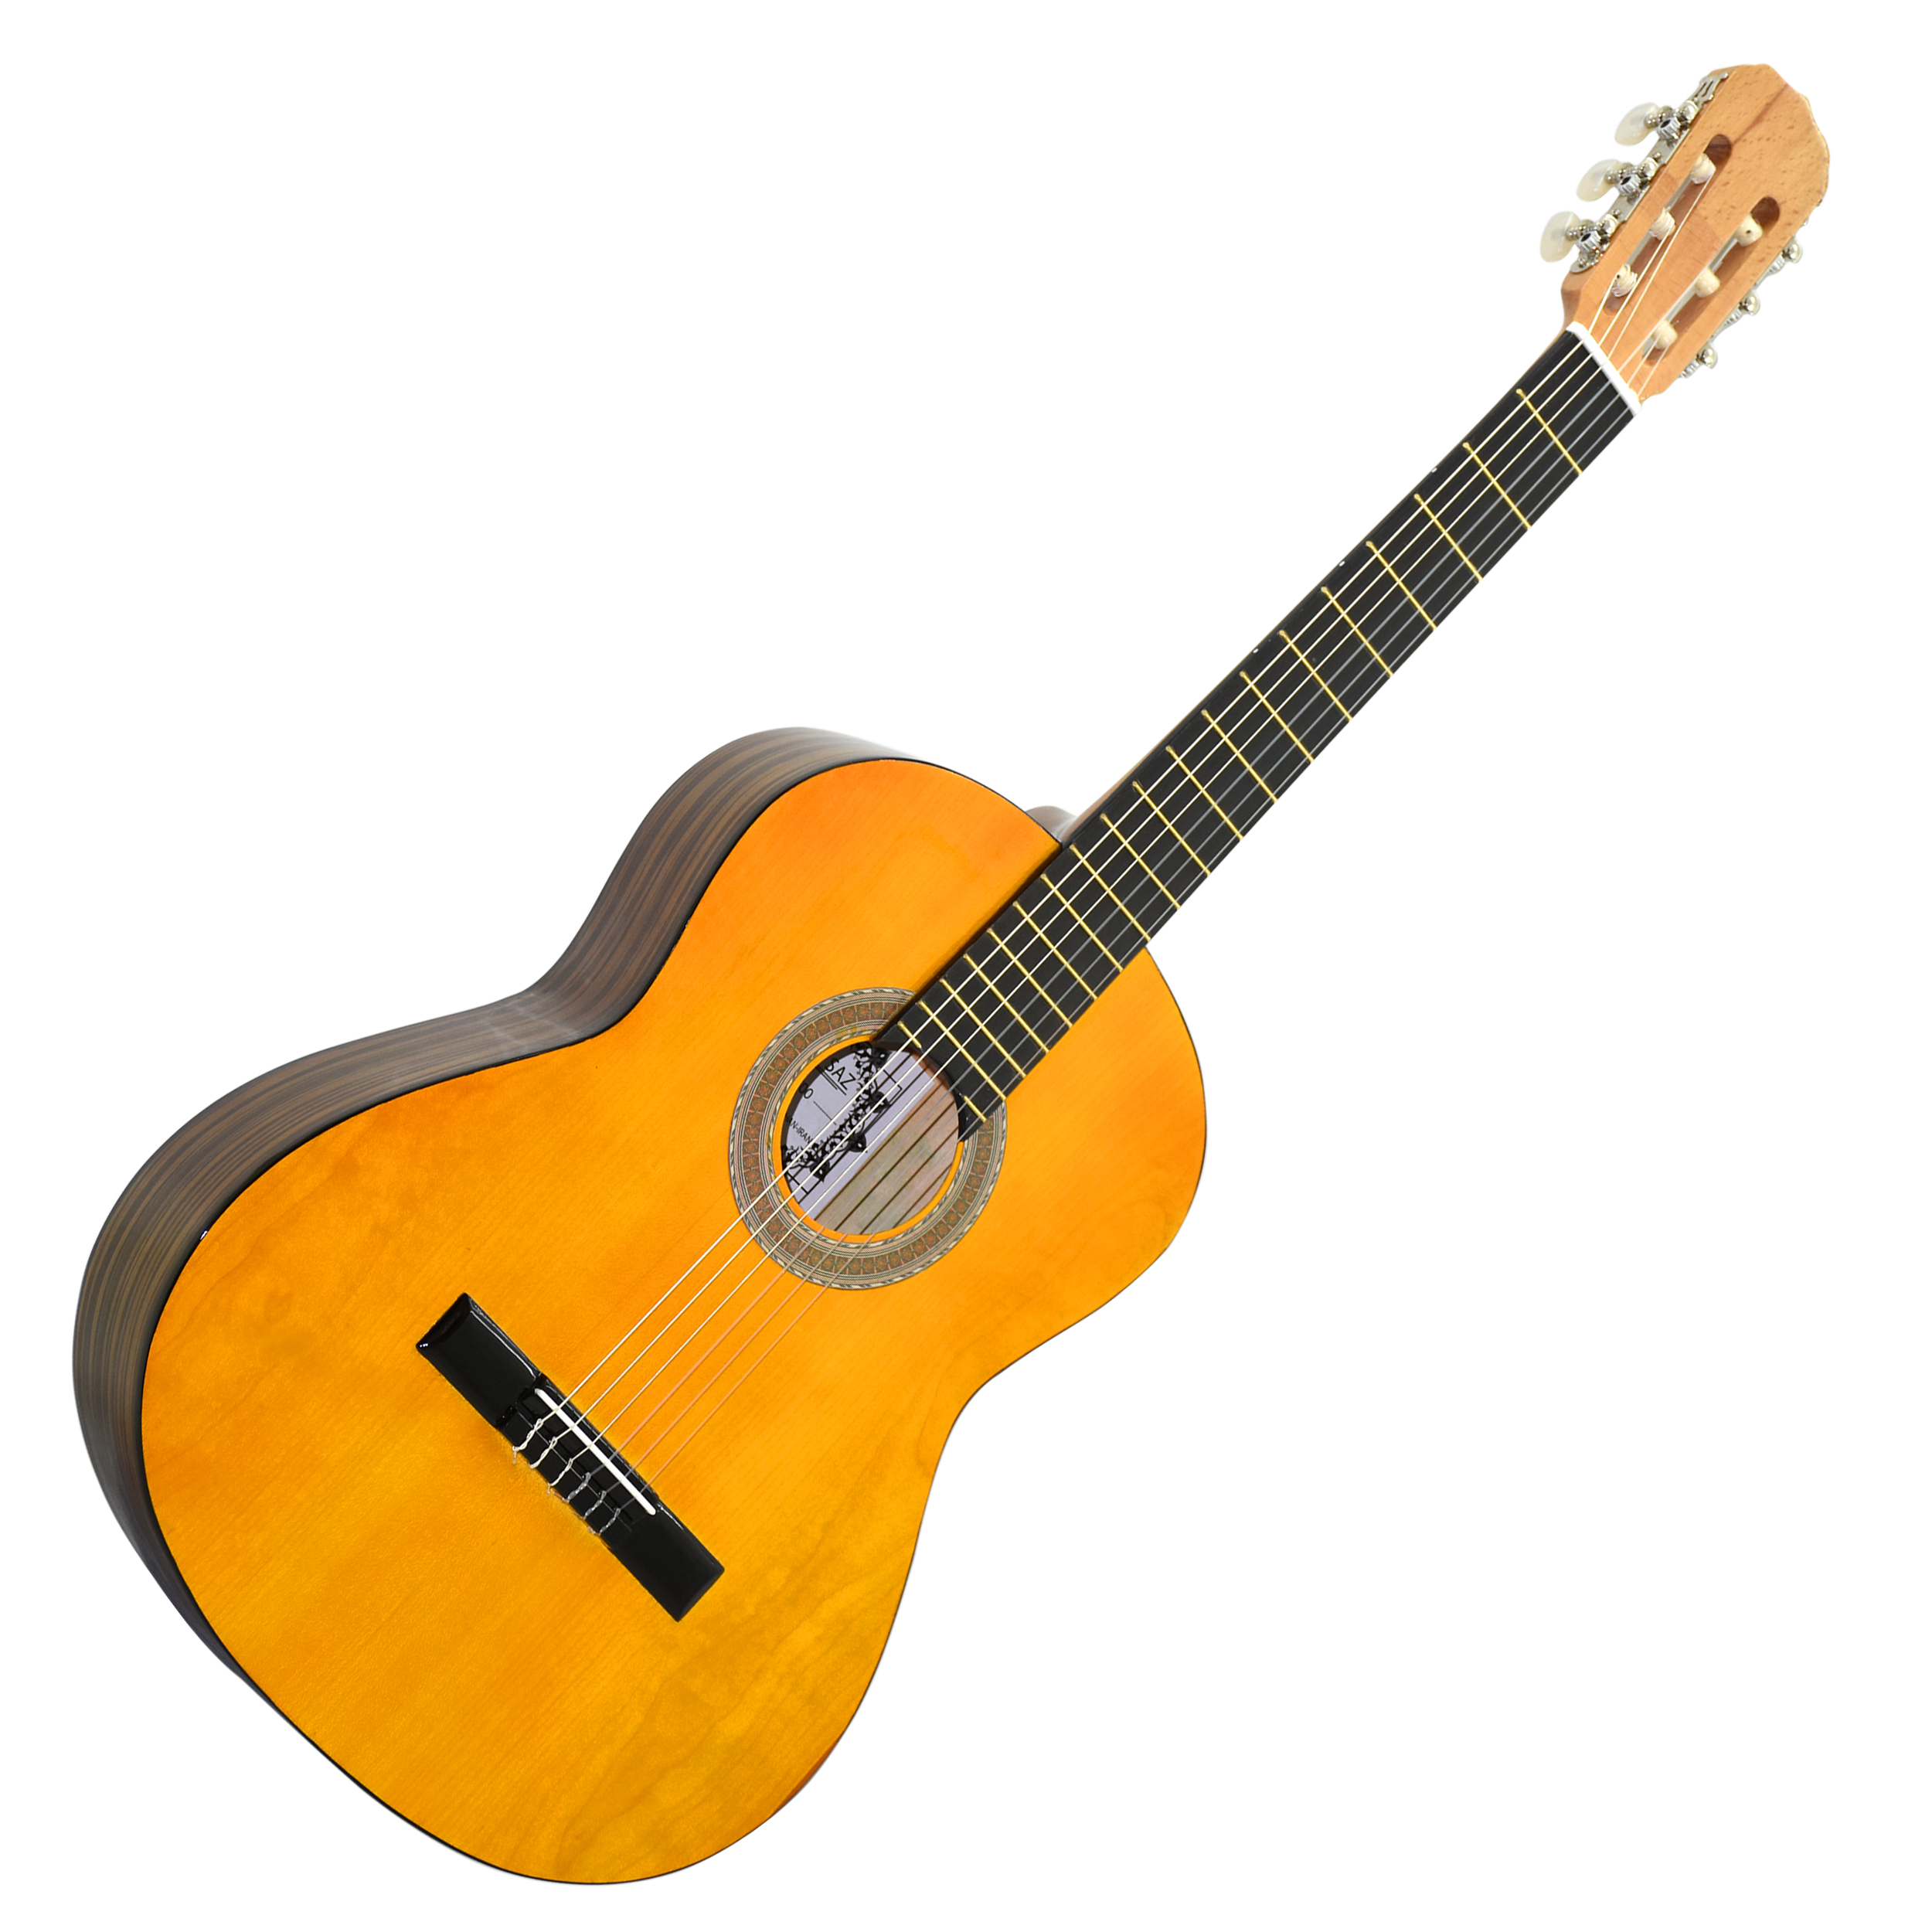  گیتار ایران ساز مدل F700-or